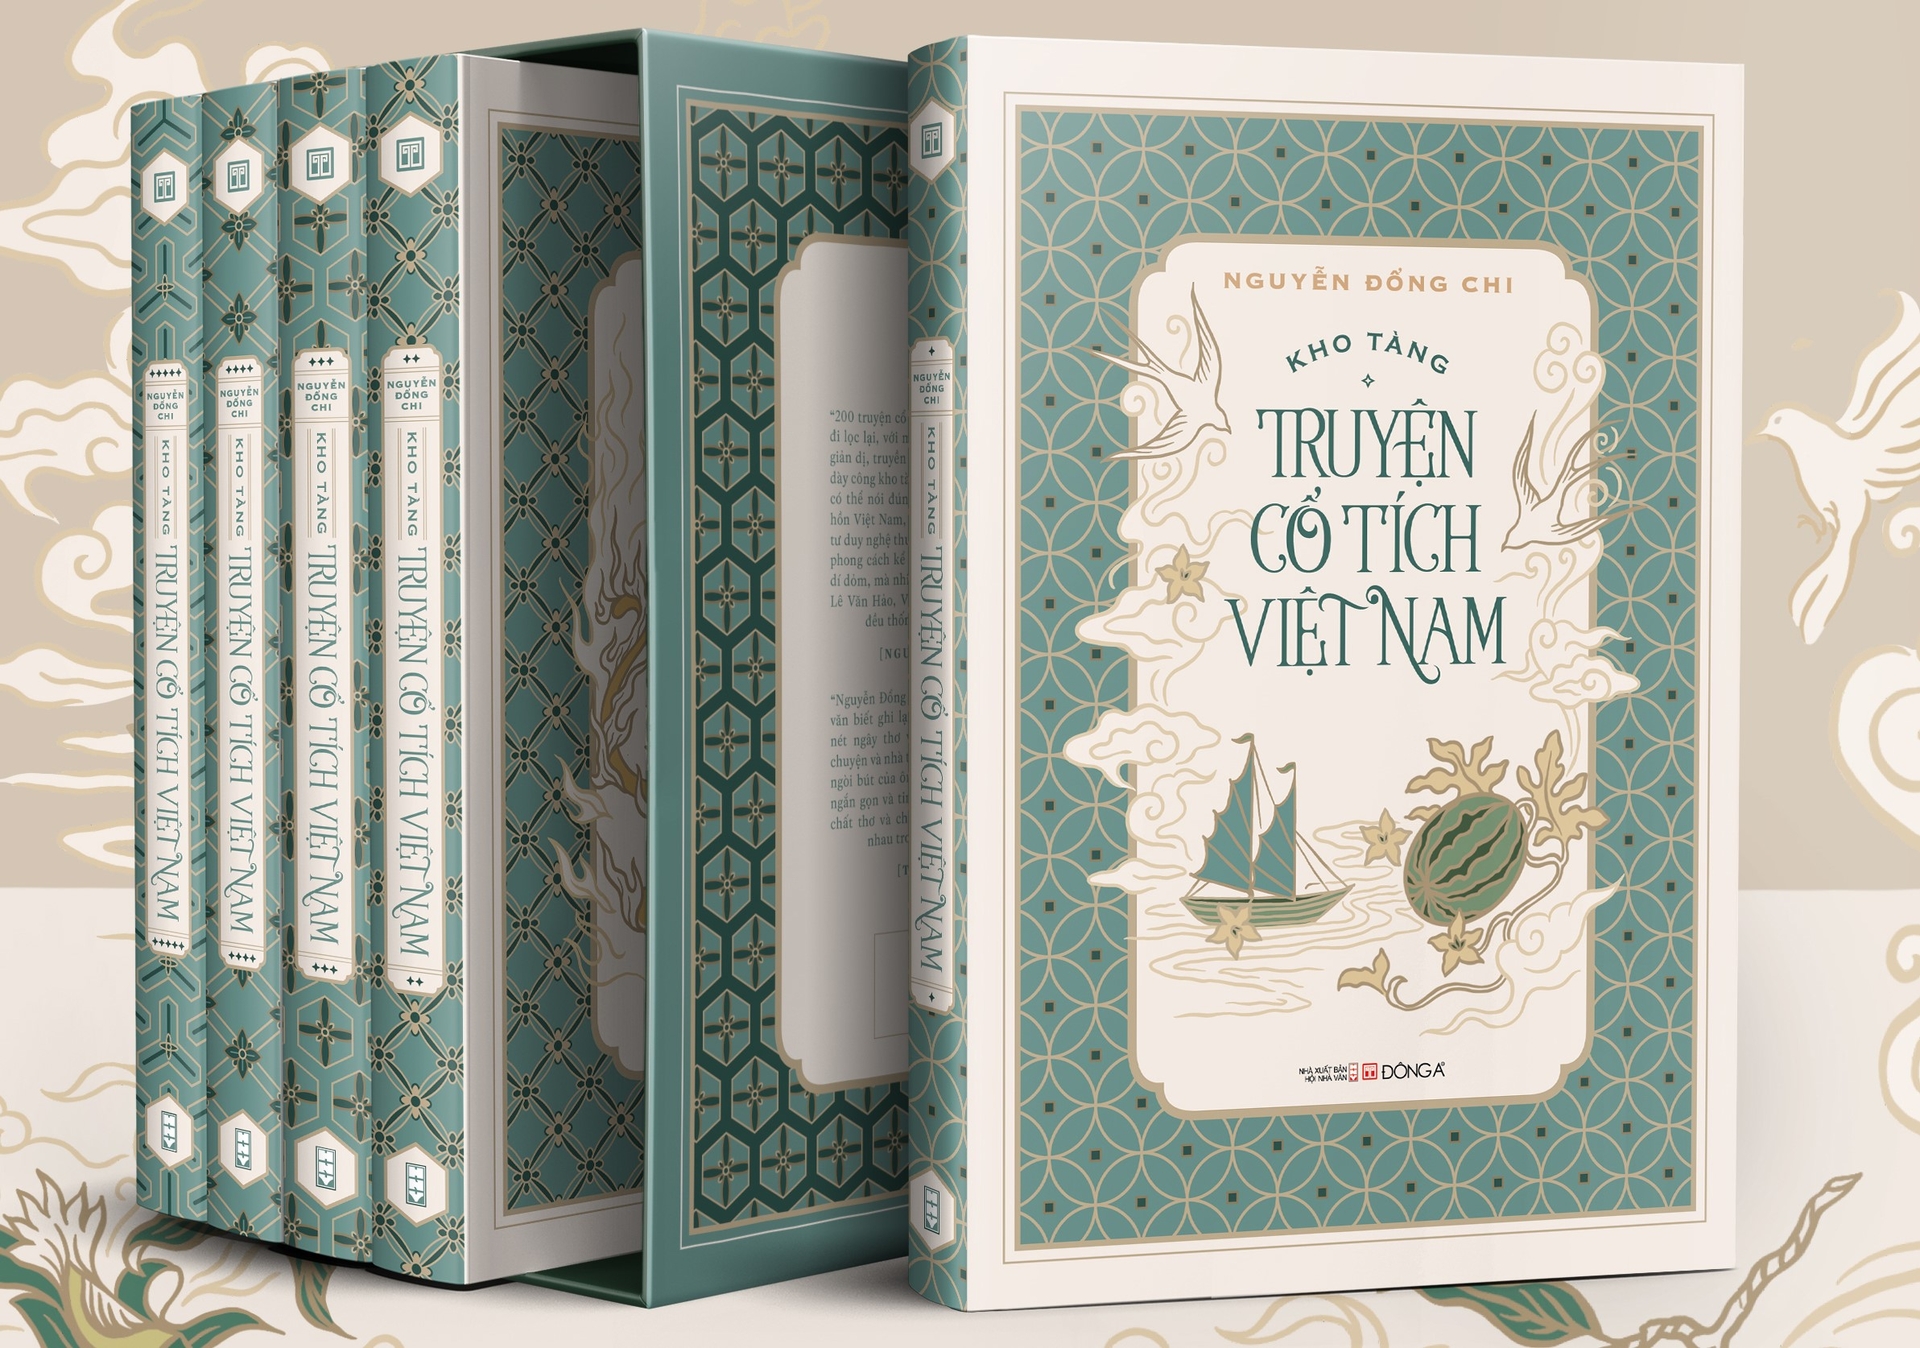 Bộ sách 'Kho tàng cổ tích Việt Nam' vừa được in lại với phong cách mỹ thuật hiện đại.